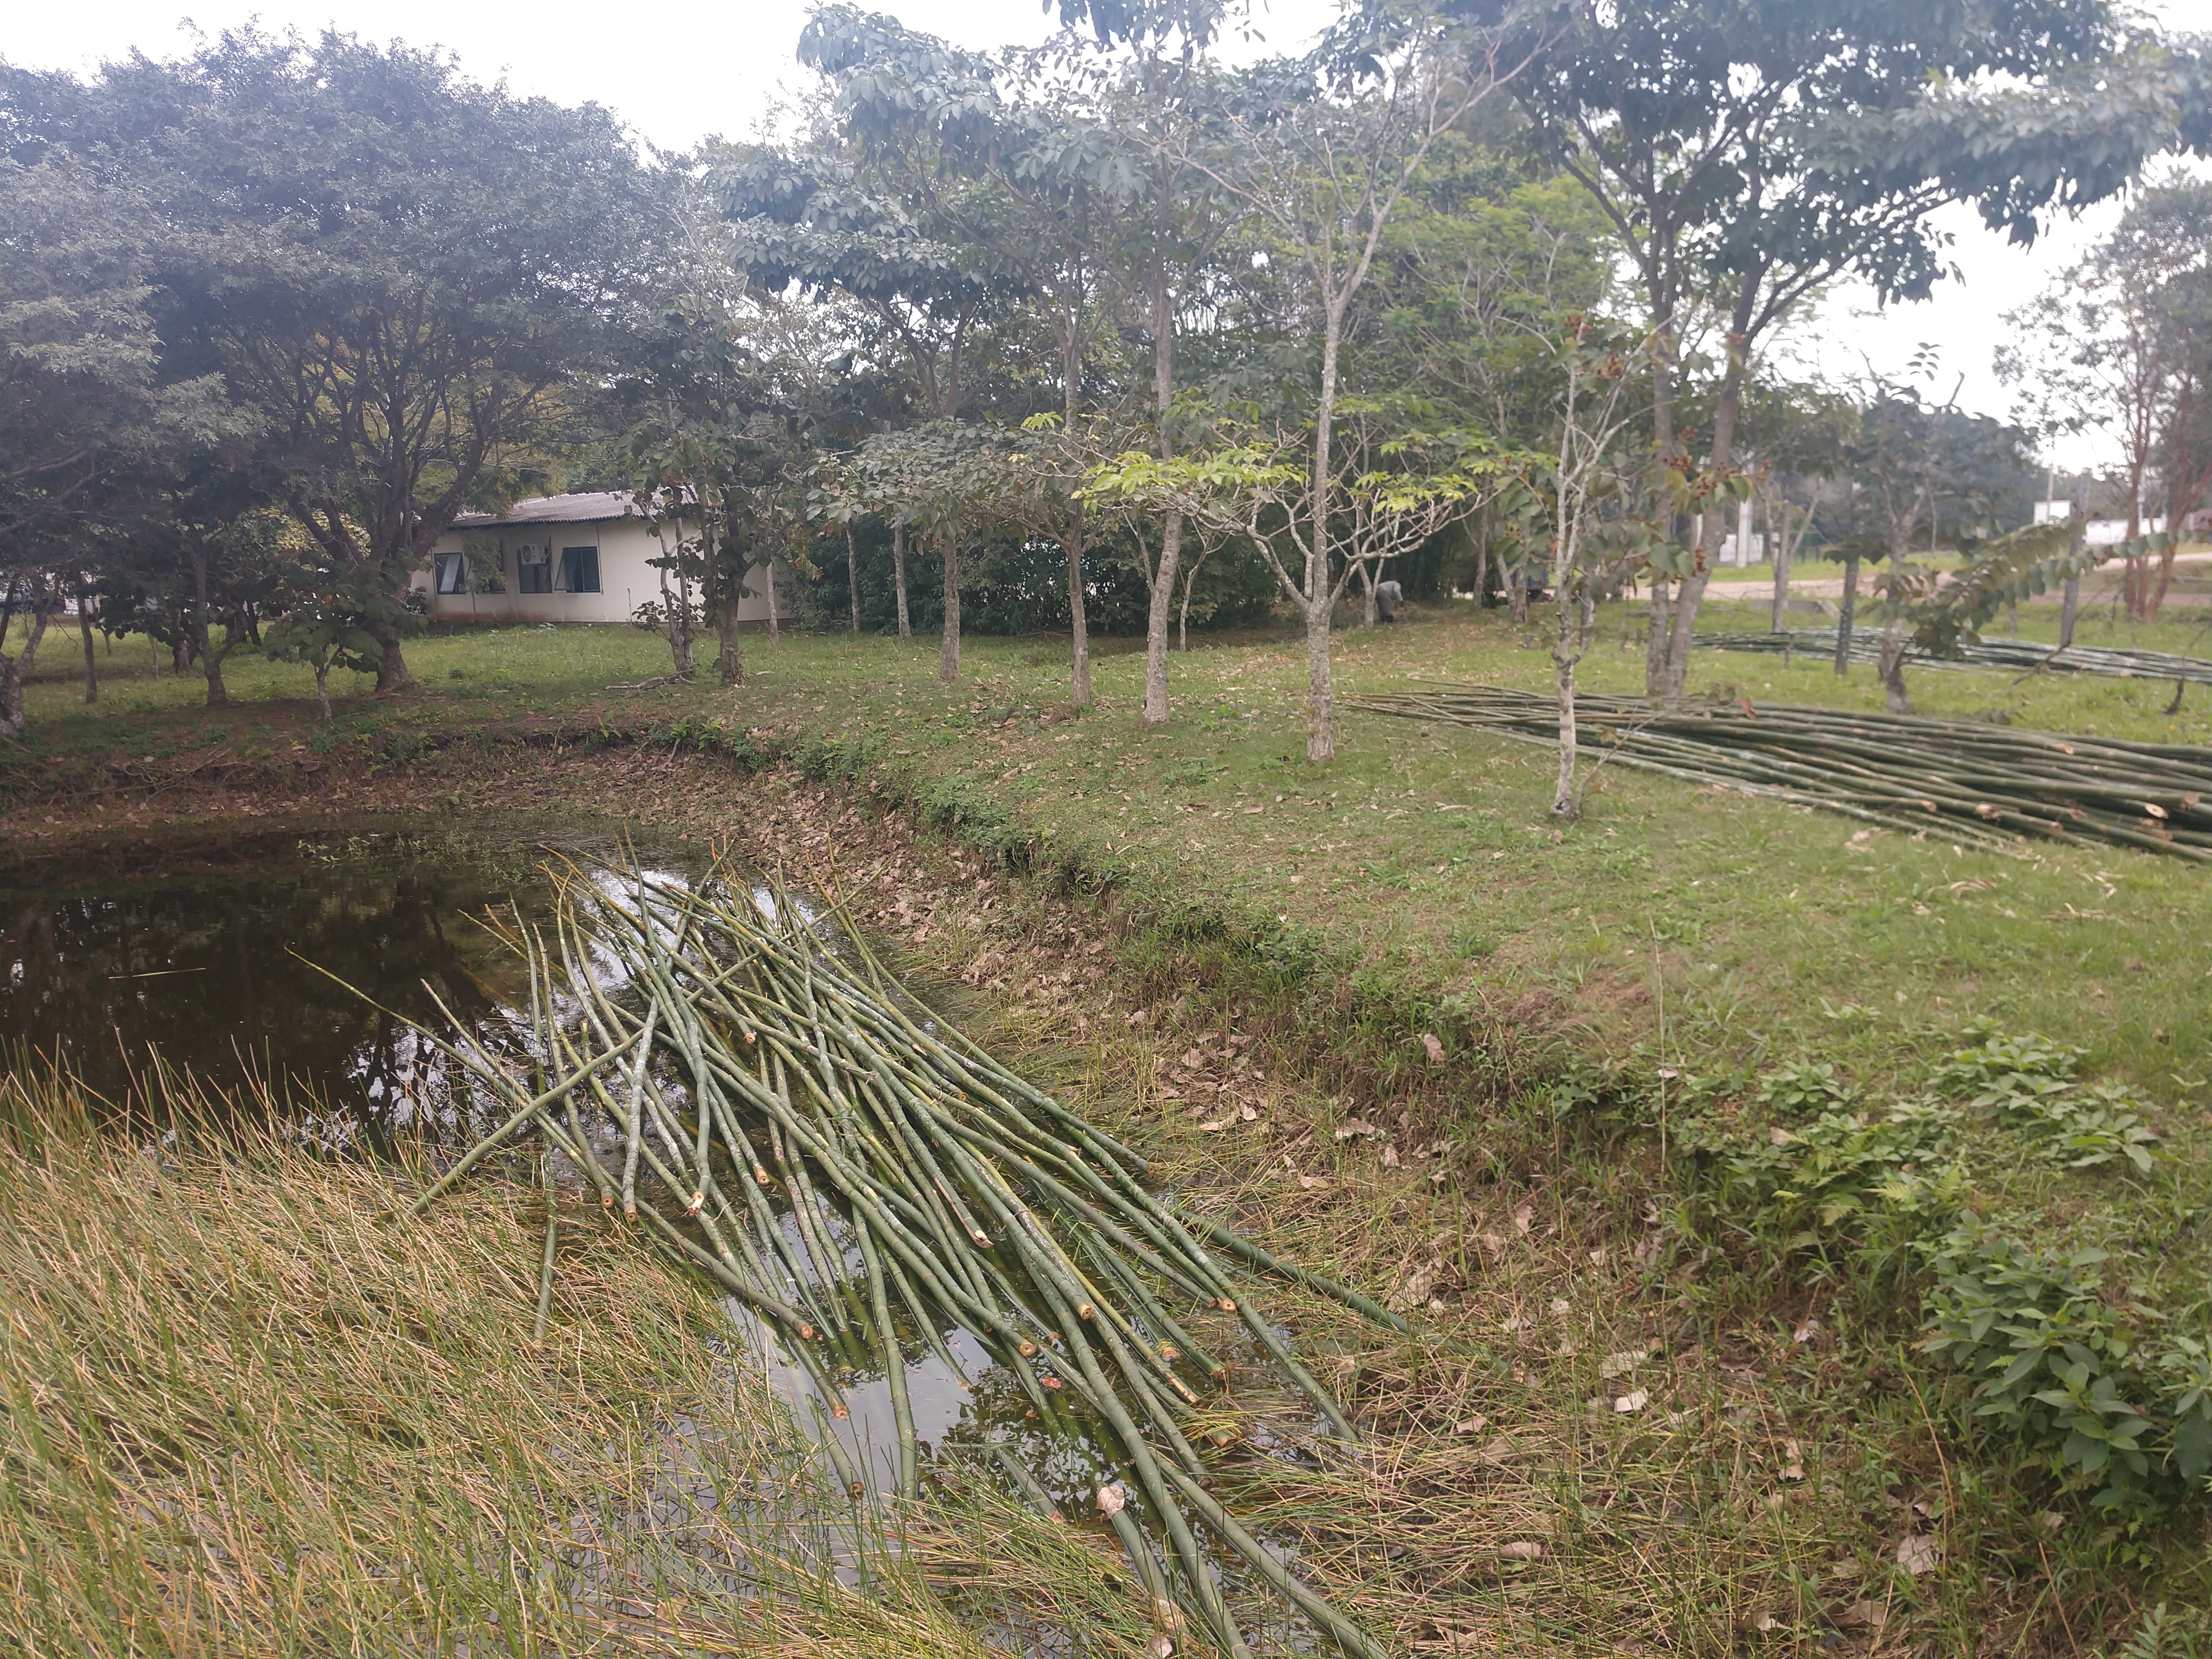 20190725 Fazenda Bambusa tuldoides após cortados para construção nova adm (2)